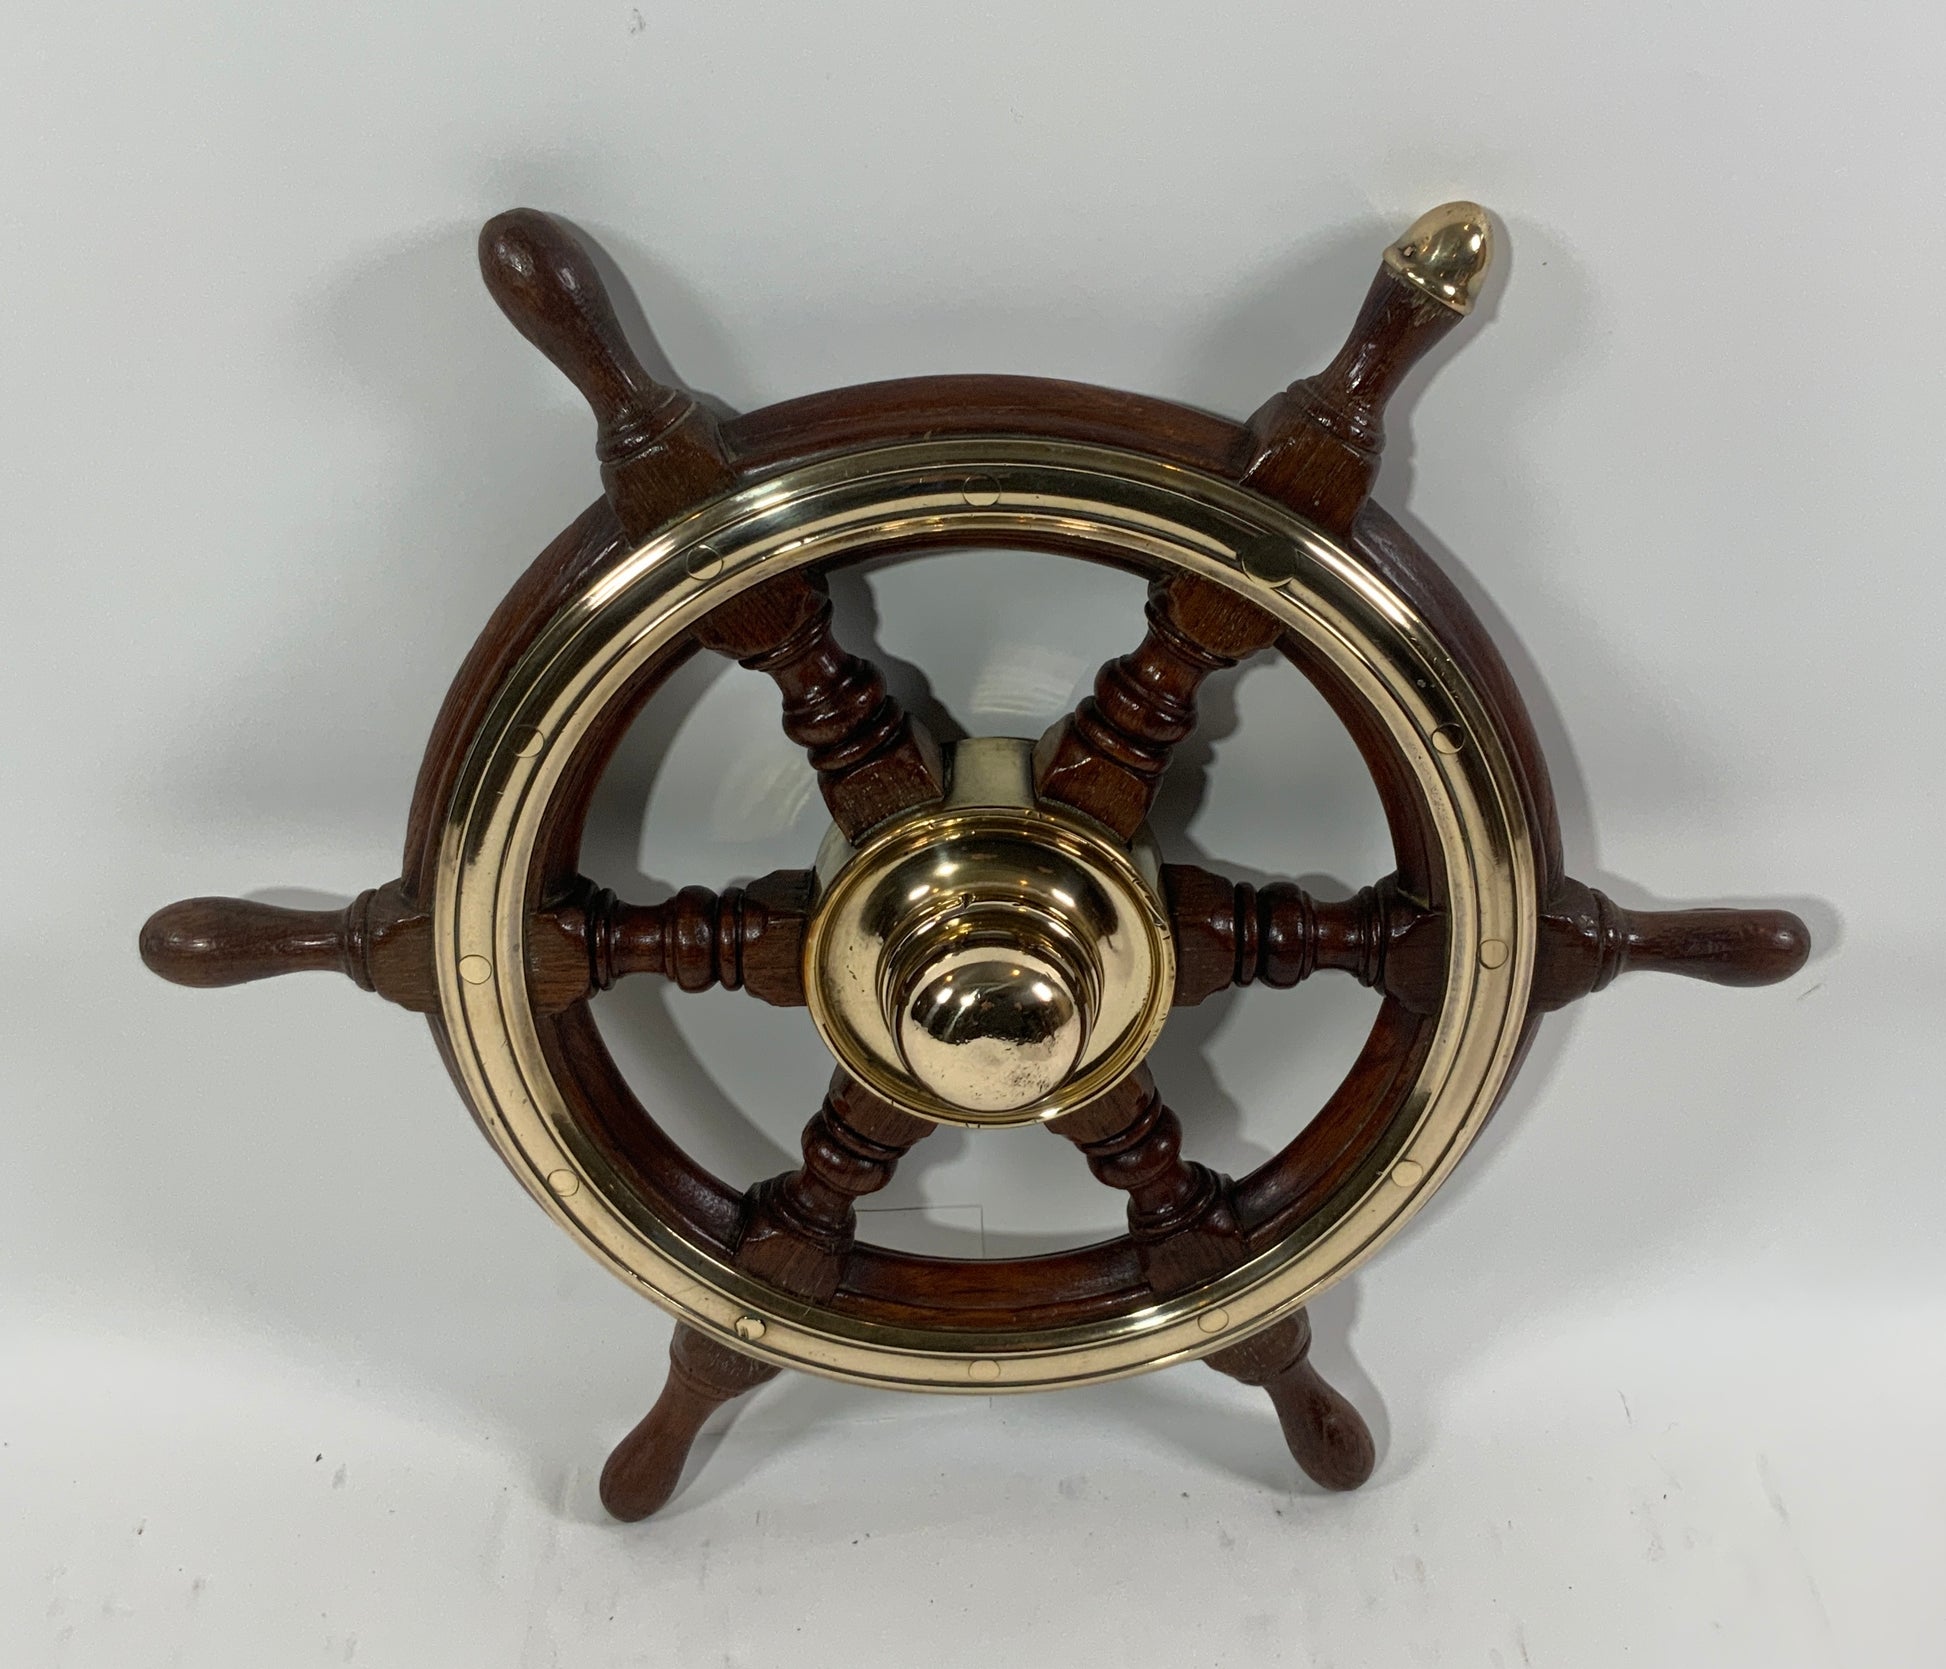 Antique Six Spoke Ships Wheel - Lannan Gallery